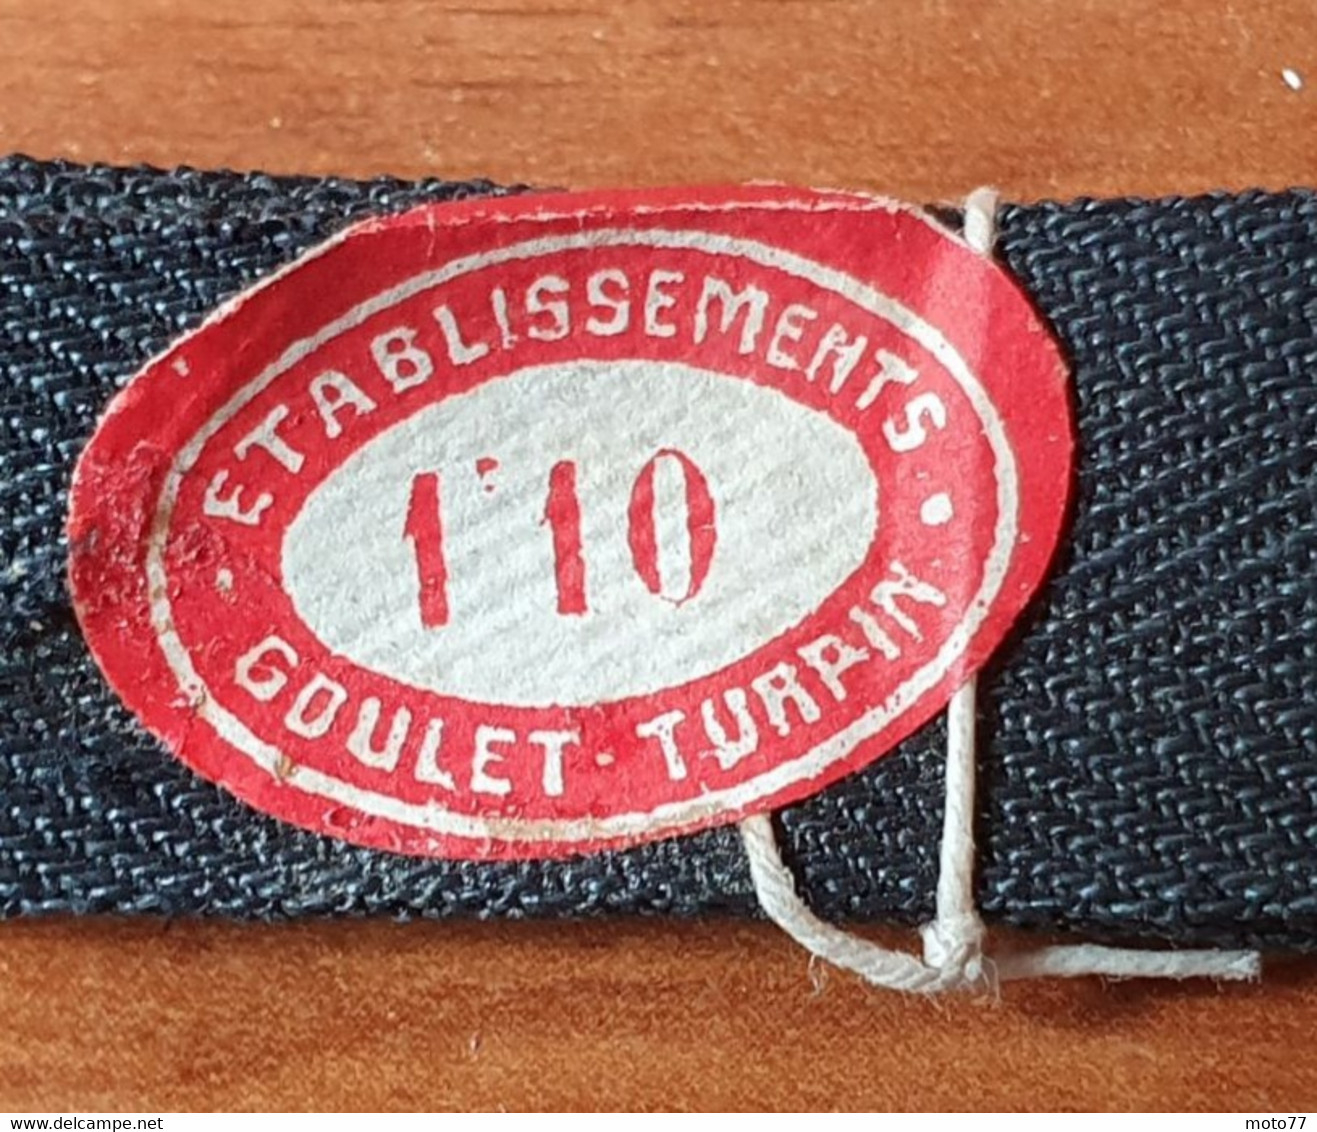 Lot 8 Retors Ruban FIL Coudre Couture Couturière Mercerie NEUF de STOCK - prix GOULET TURPIN -vers 1950